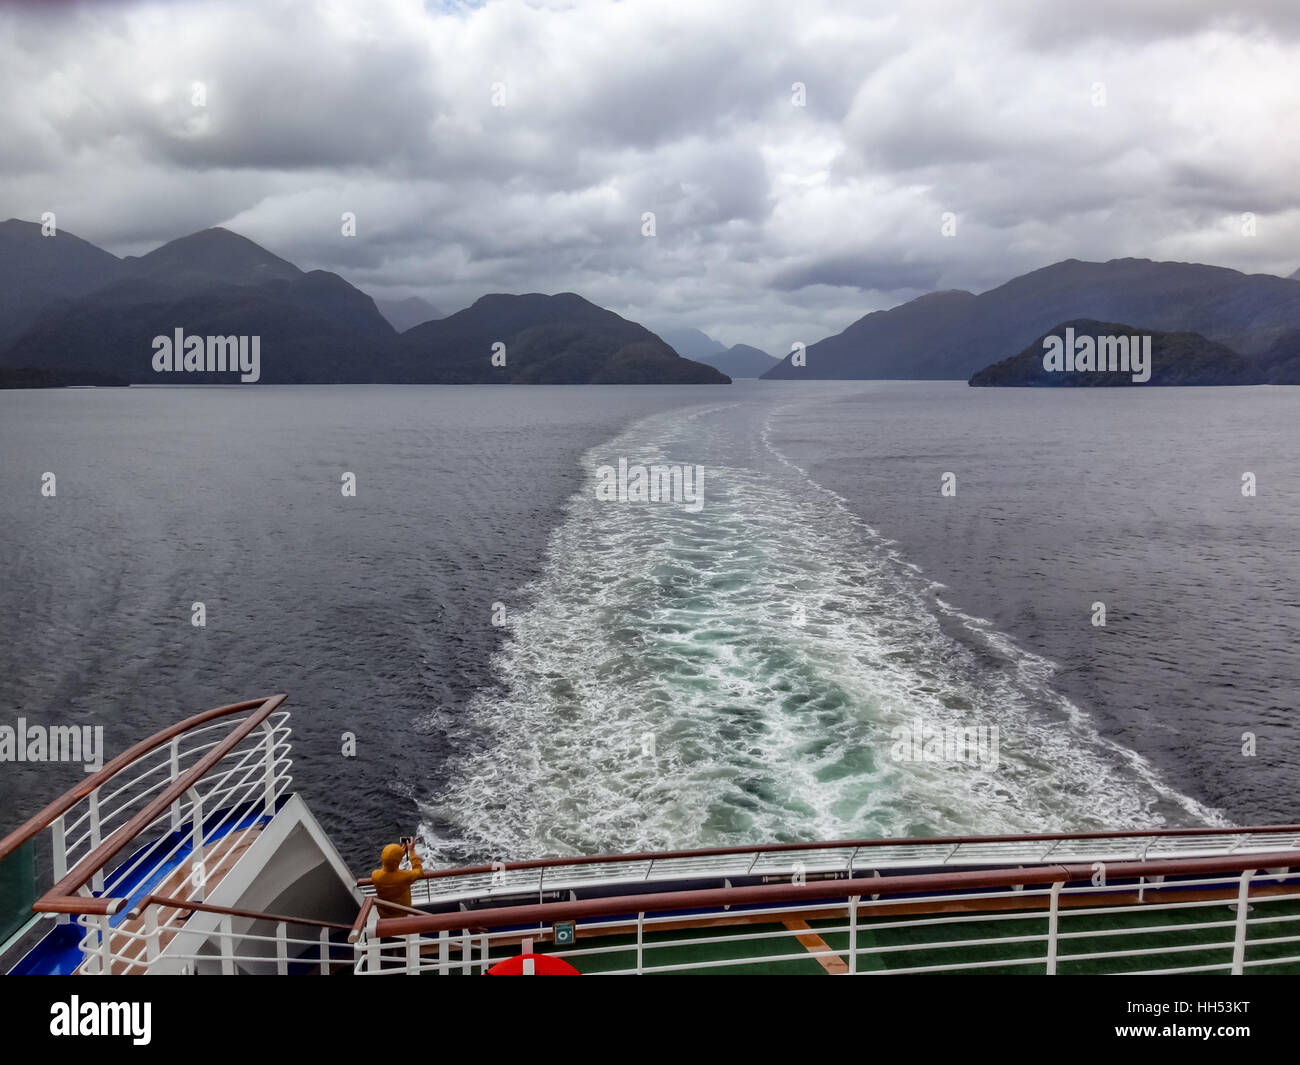 Wake of cruise ship navigating Fiordland, New Zealand Stock Photo